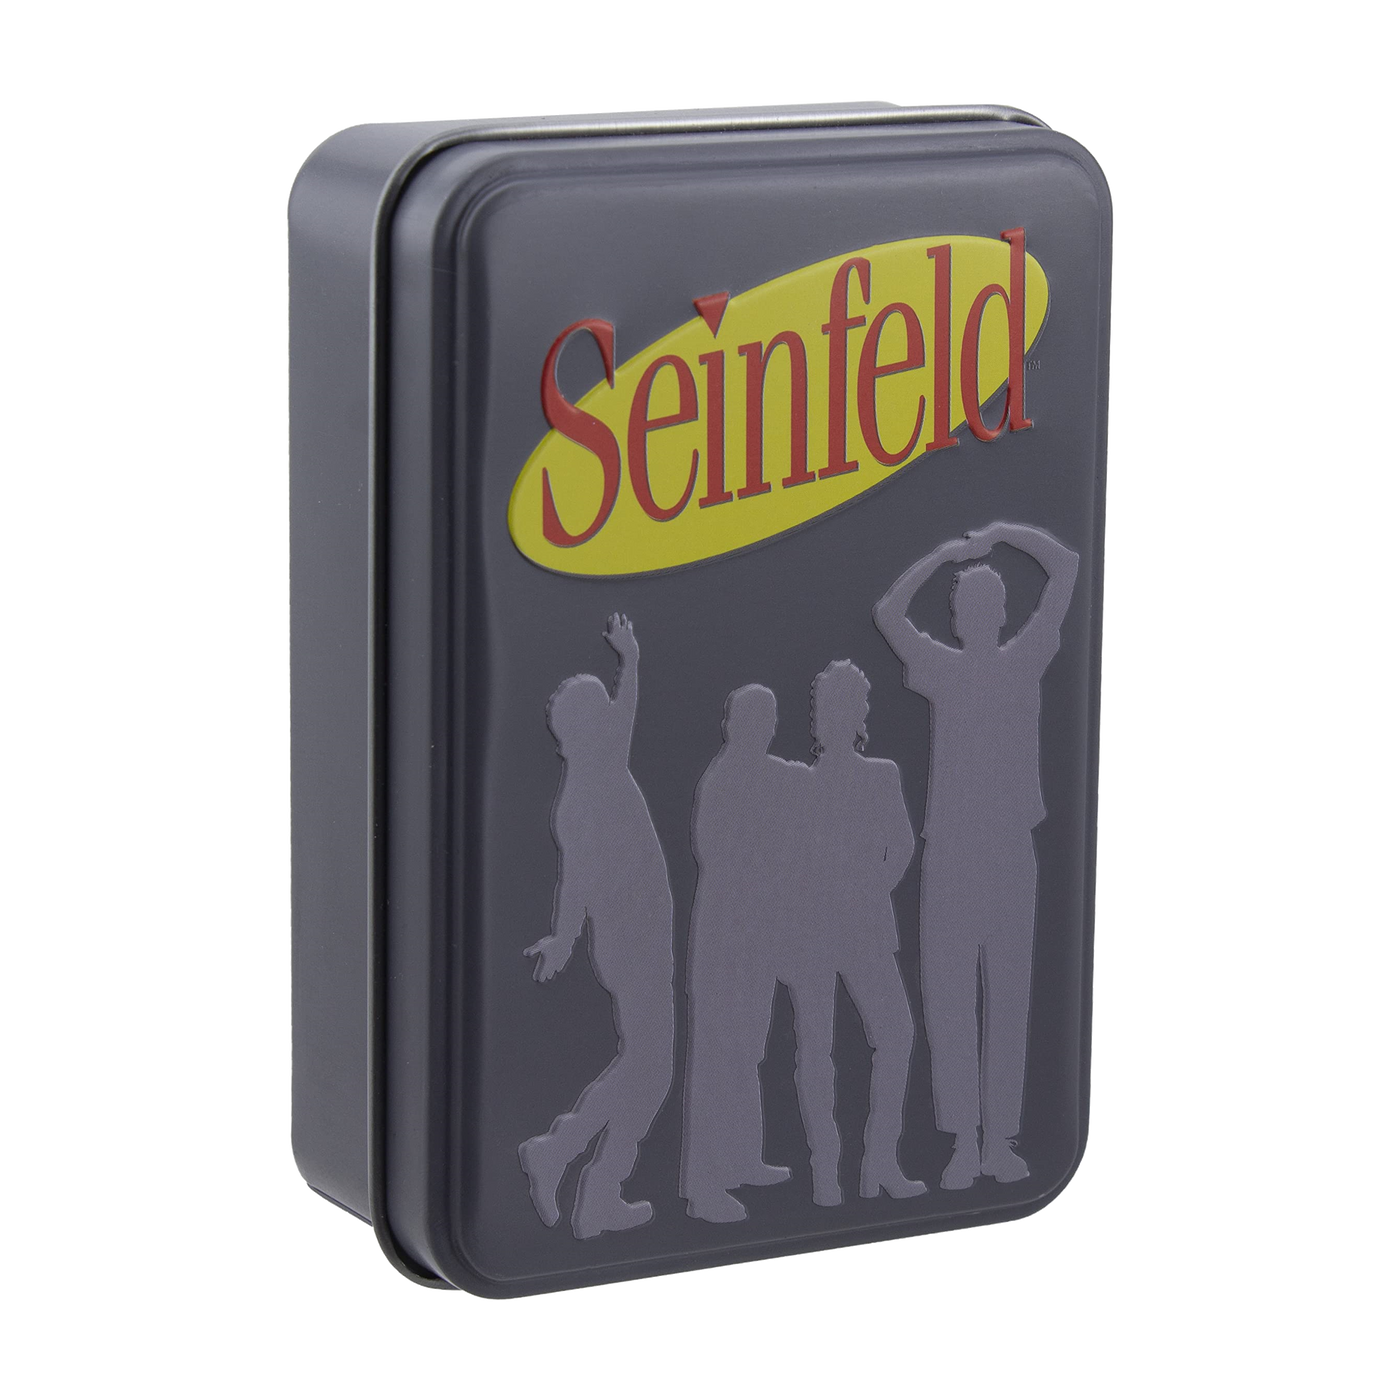 Seinfeld spillekort